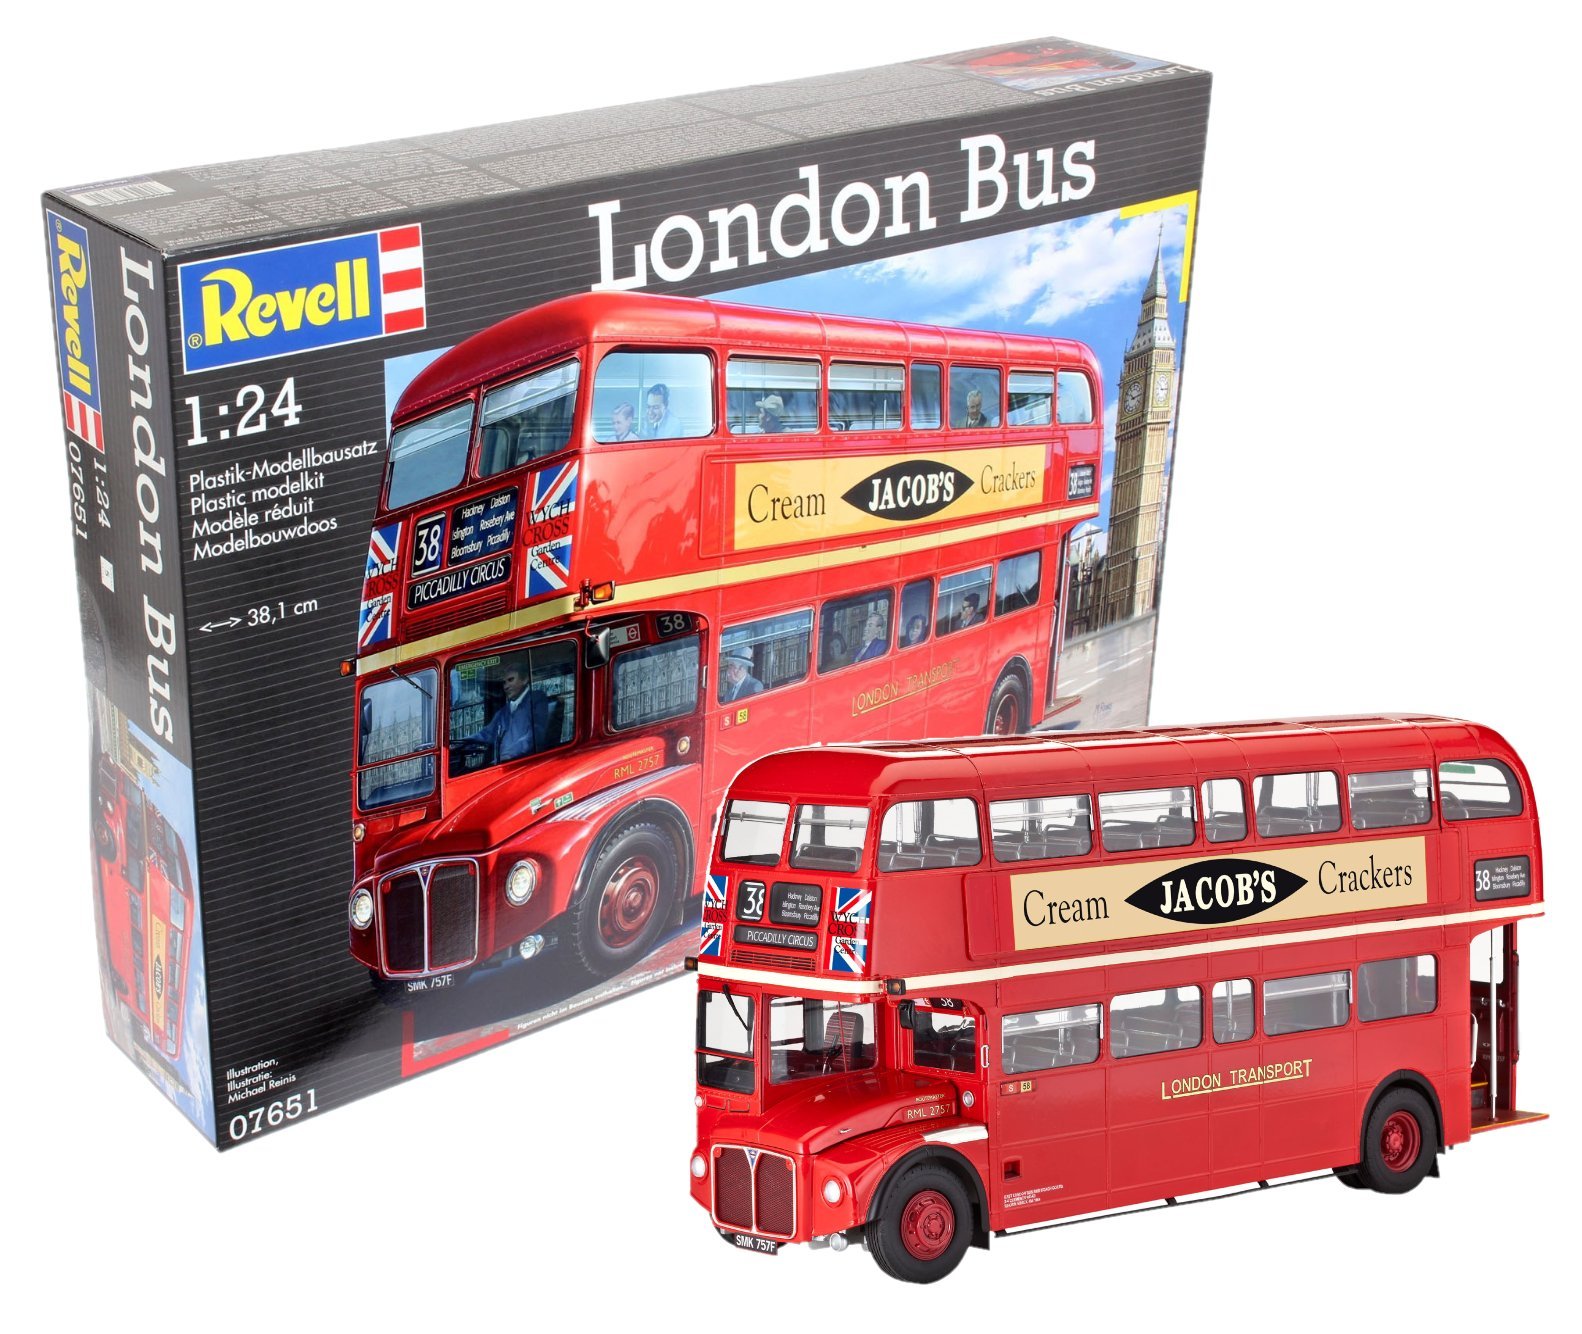 Revell RV07651 Modellbausatz Bus 1:24 - Doppeldecker London Bus im Maßstab 1:24, Level 5, originalgetreue Nachbildung mit vielen Details, 7651